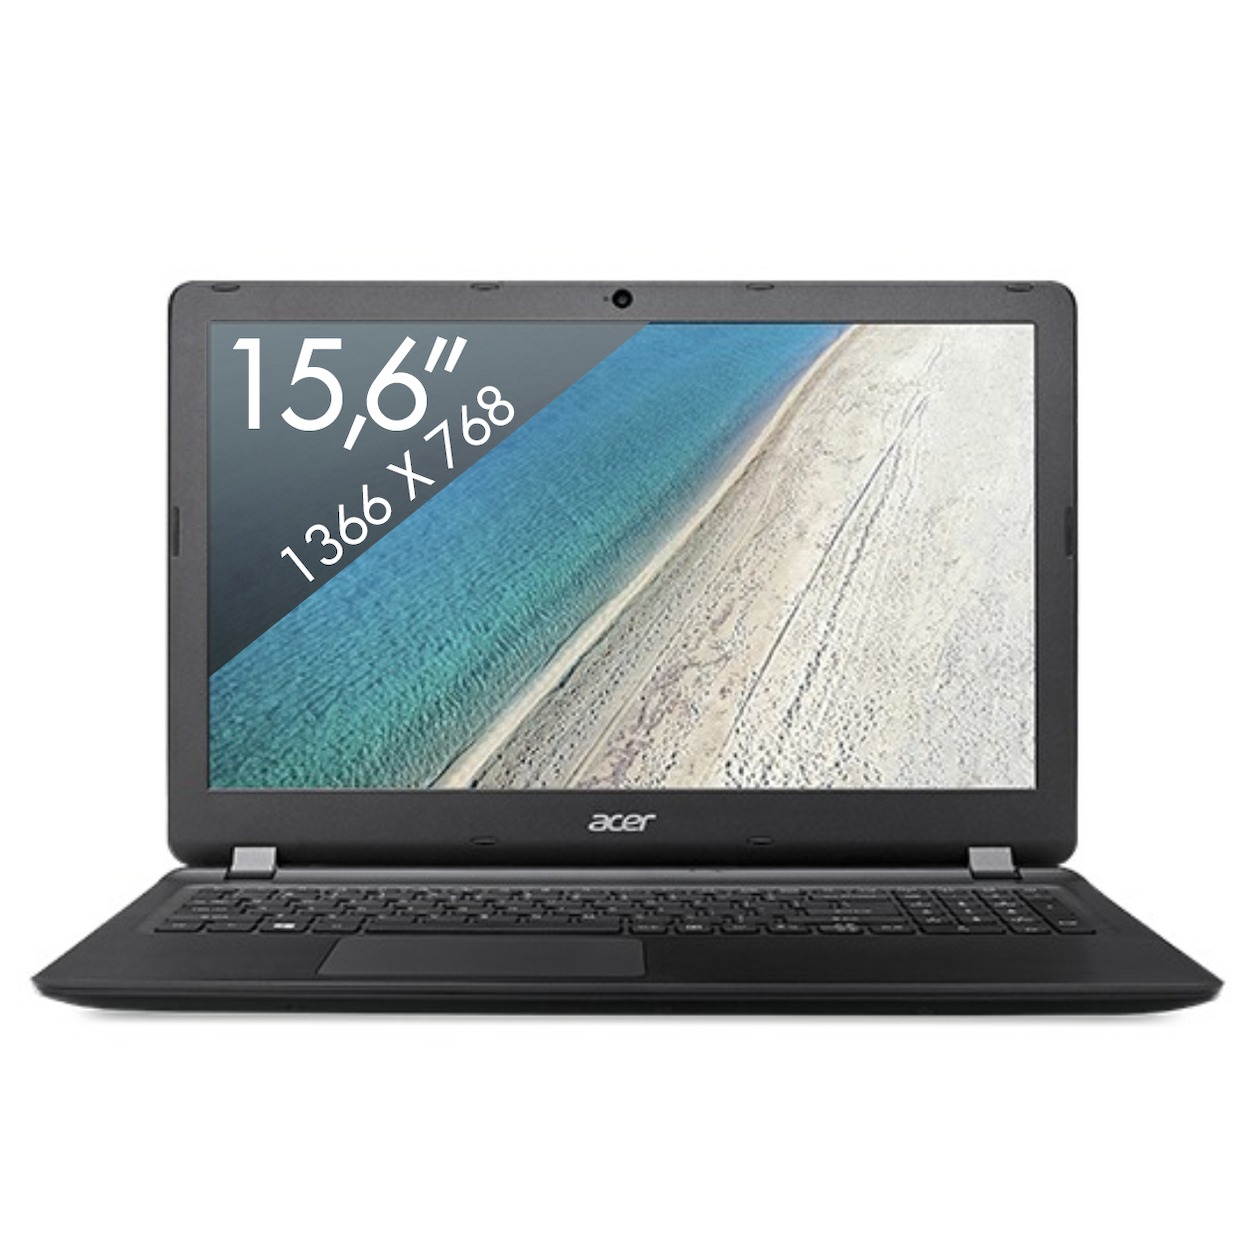 Acer Extensa 15 EX2540-36F3 zwart